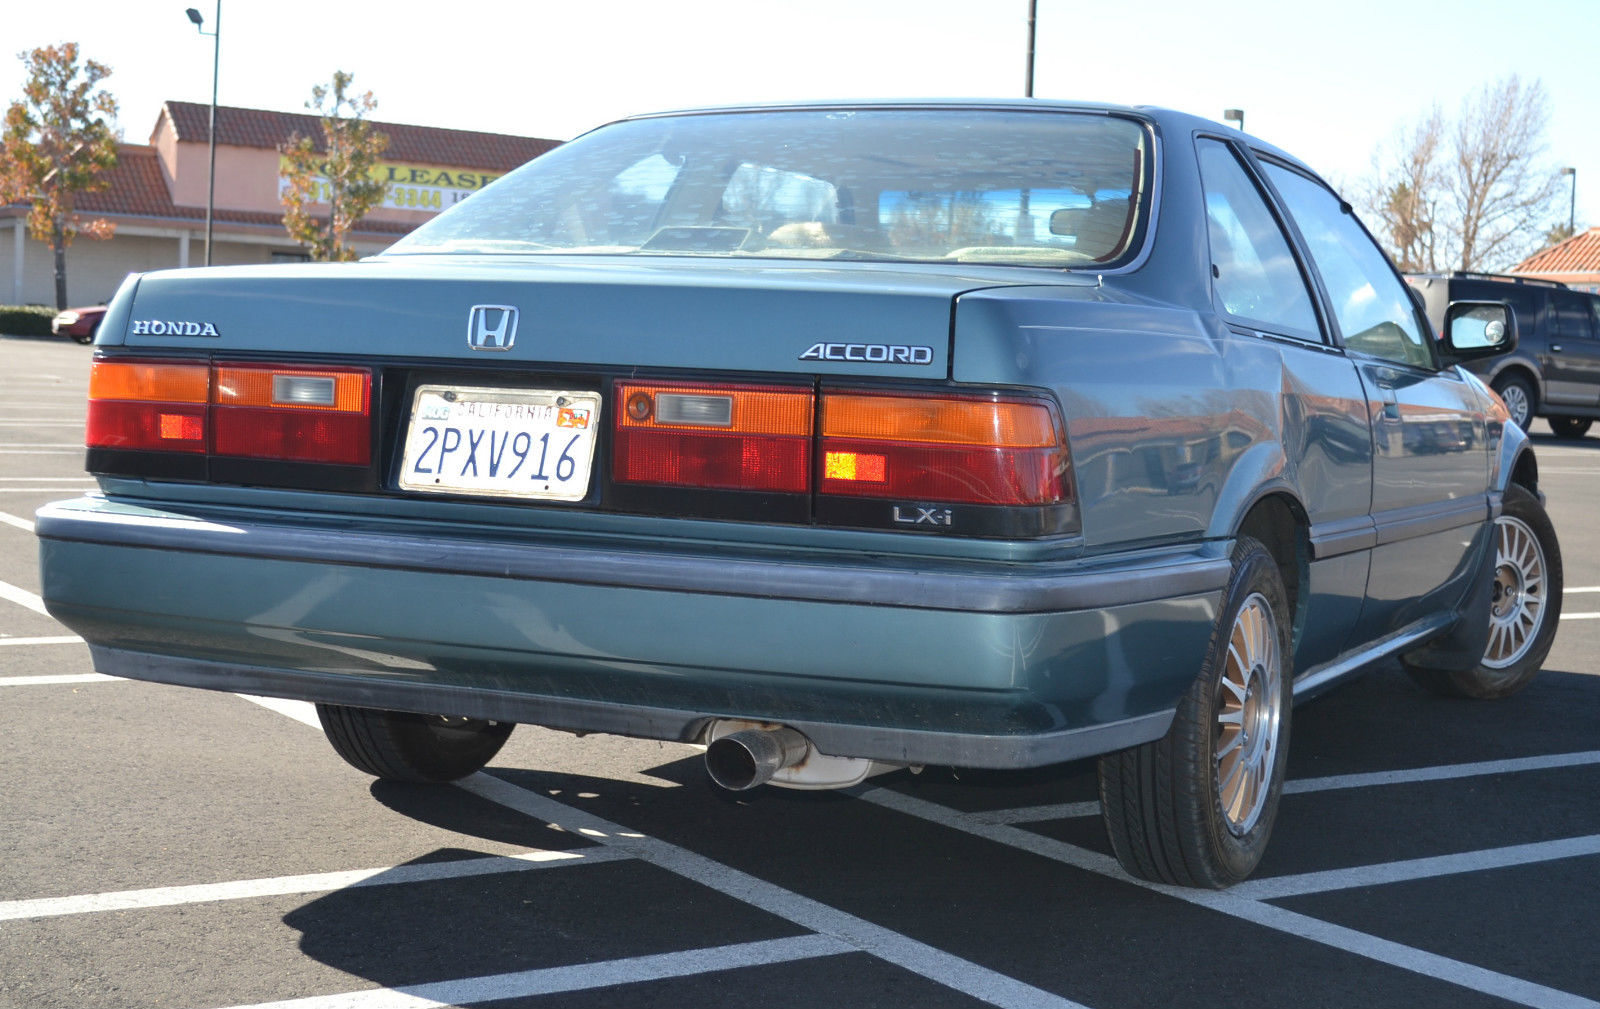 1989 Honda Accord LX-I Coupe Manual Rust Free California ...